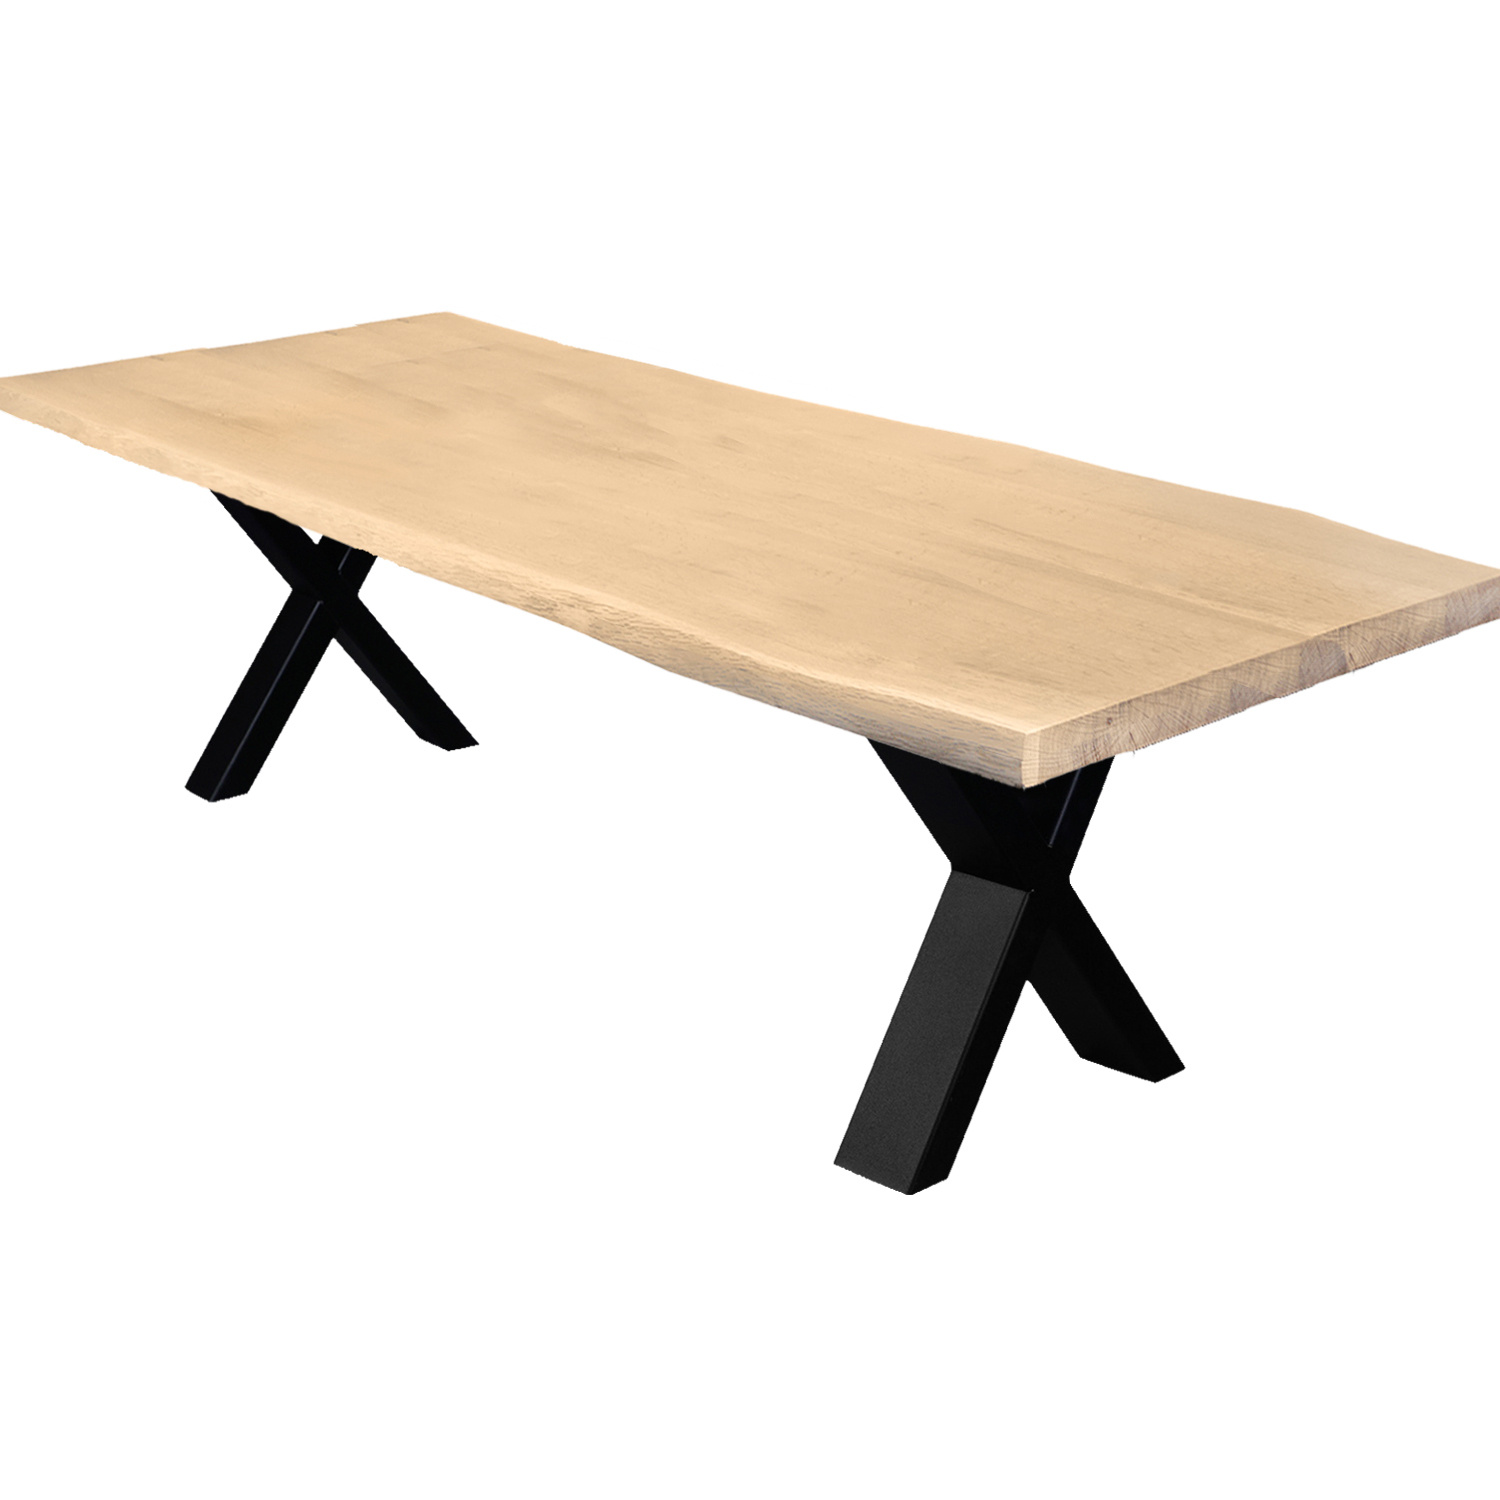  Tischplatte Eiche - mit Baumkante (Optik)  - nach Maß - 2,7 cm dick (1-Schicht) - Breite Lamellen (10 - 12 cm breit) - Eichenholz A-Qualität mit natürlichen Baumkant - verleimt & künstlich getrocknet (HF 8-12%) - 50-120x50-248 cm